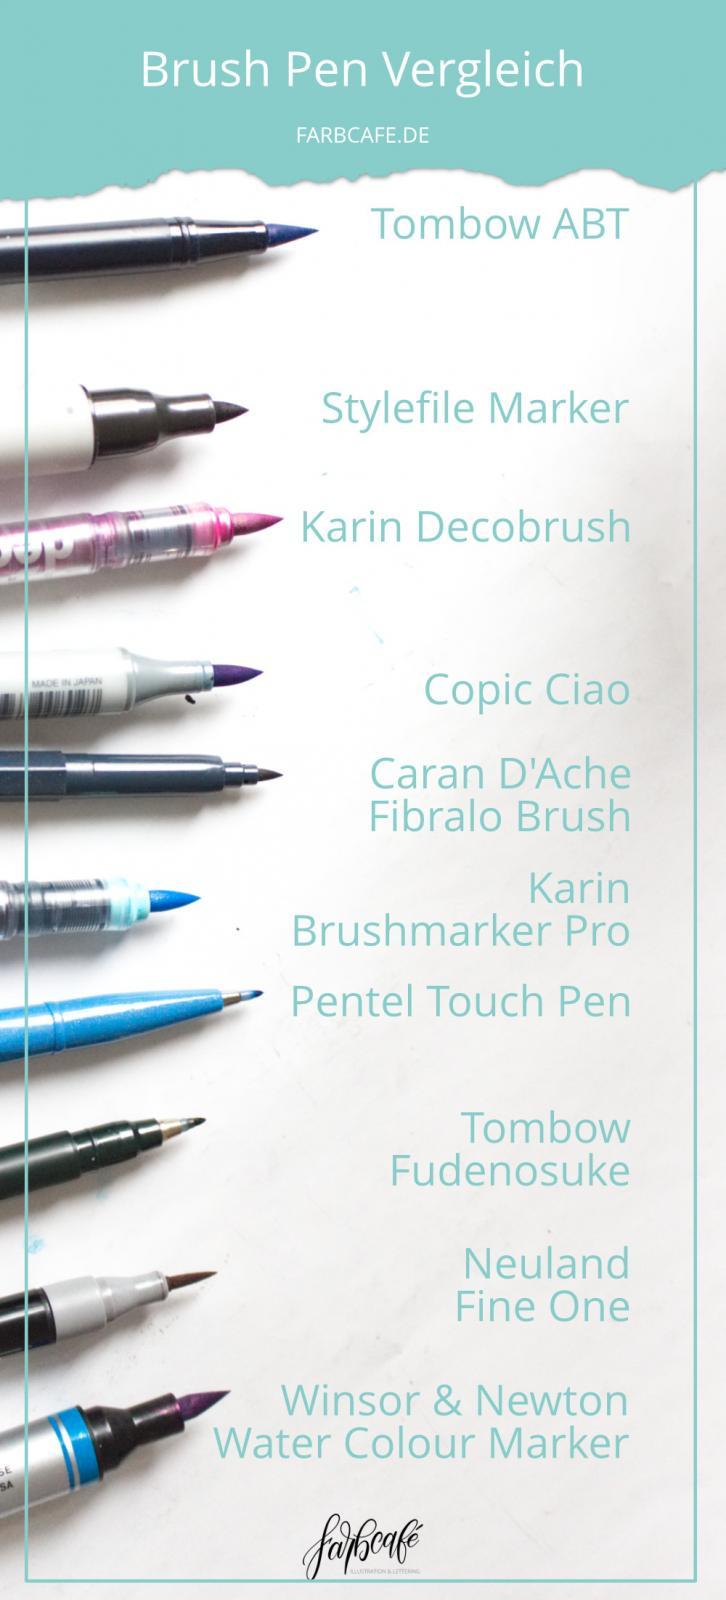 Brush Pen Der große Vergleich, der alle Fragen beantwortet • FarbCafé